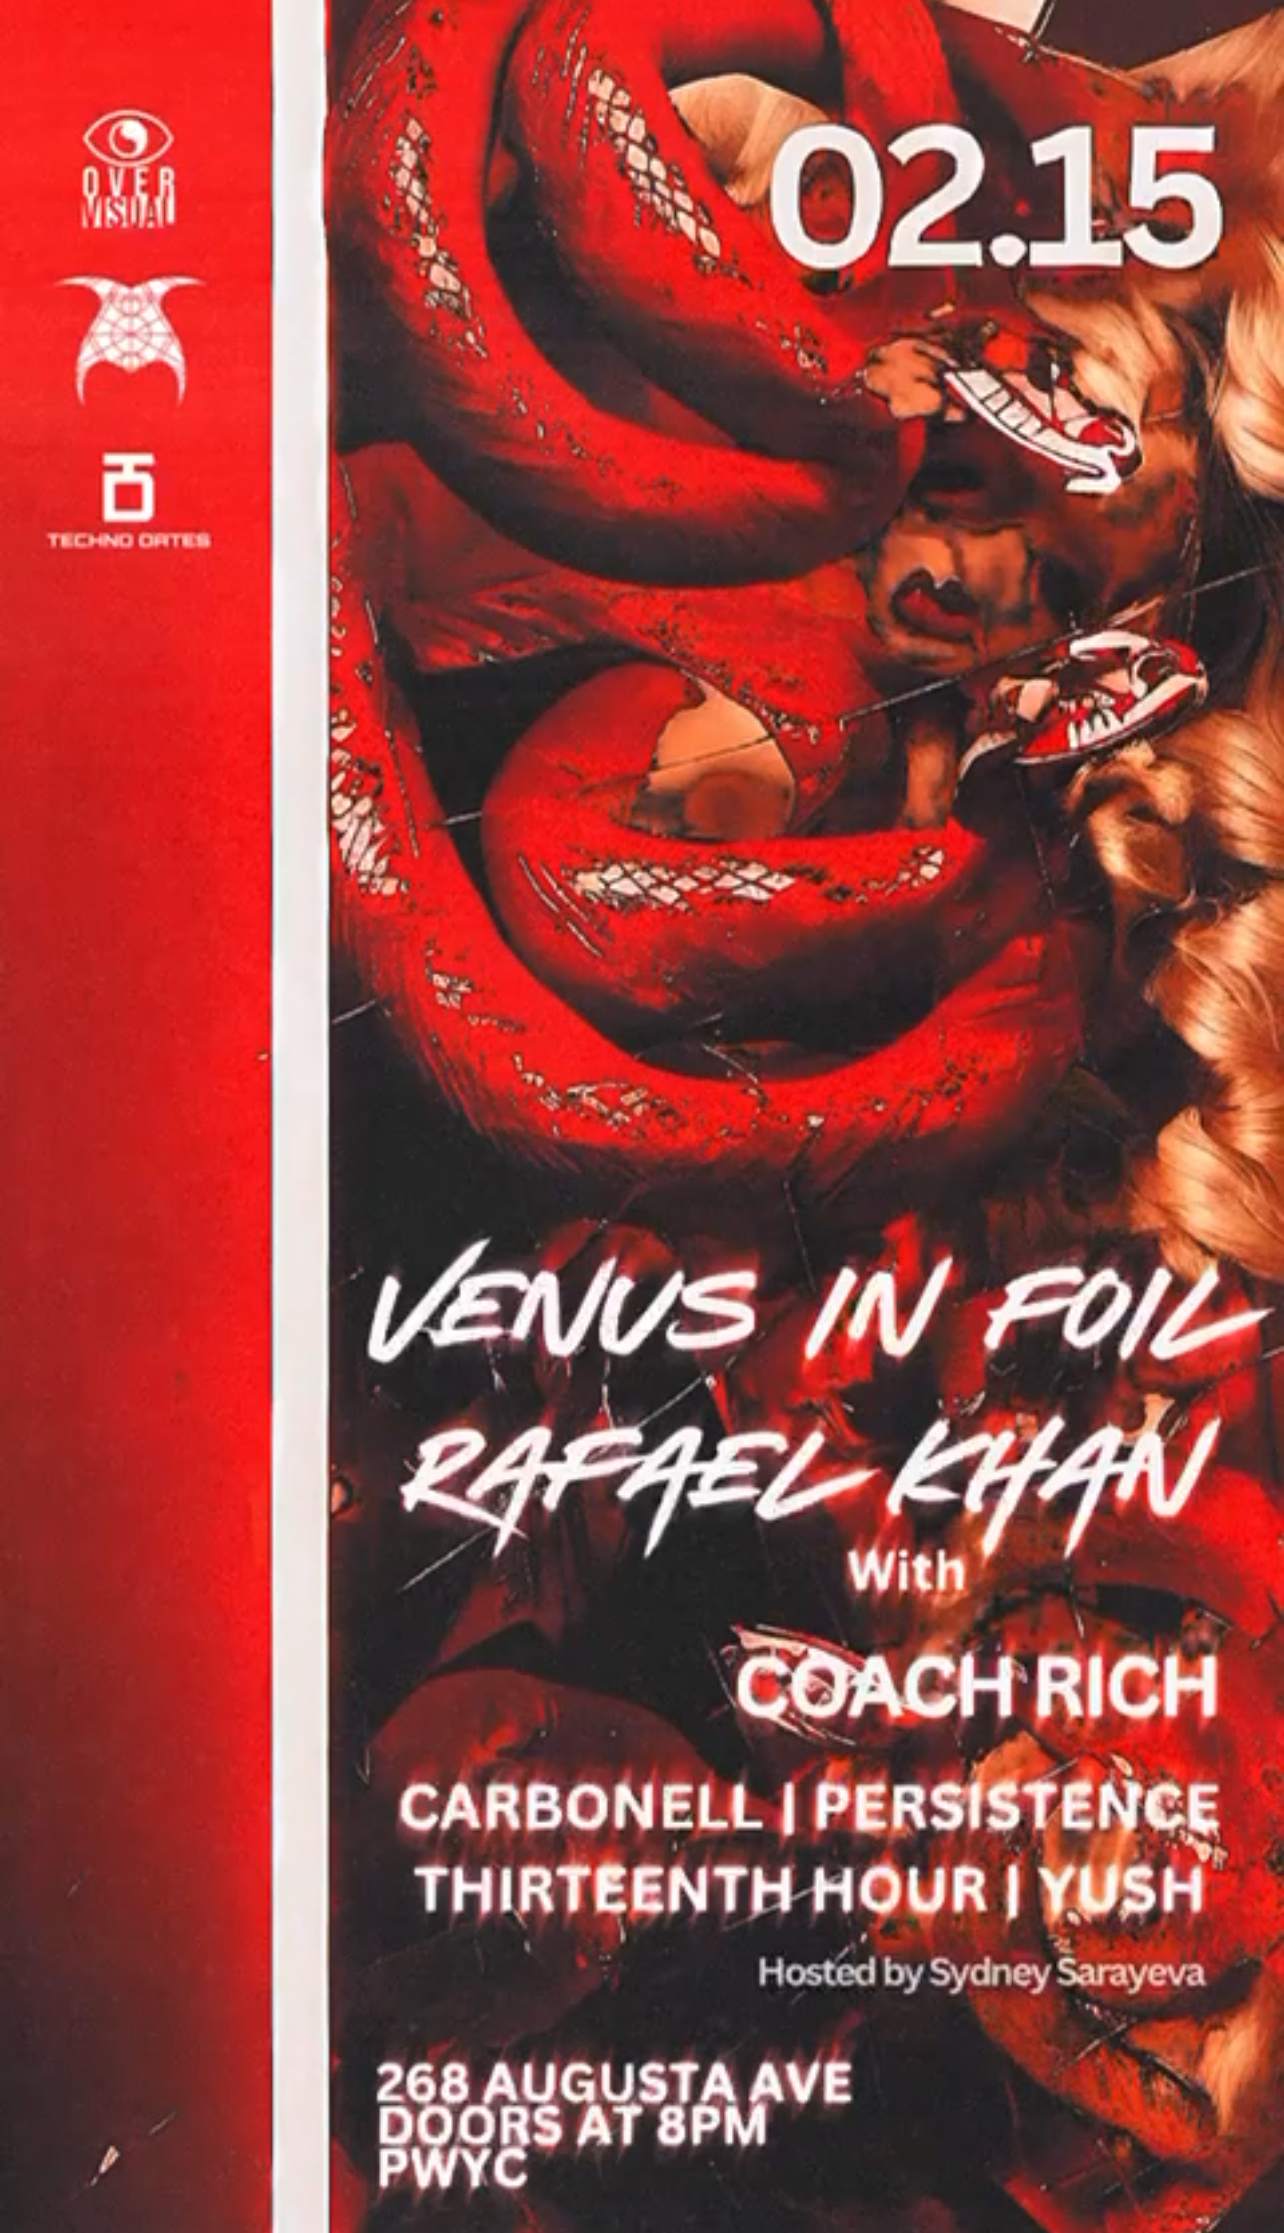 Venus in Foil, Rafael Khan and Coach Rich. Hosted by Sydney Sarayeva - Página frontal